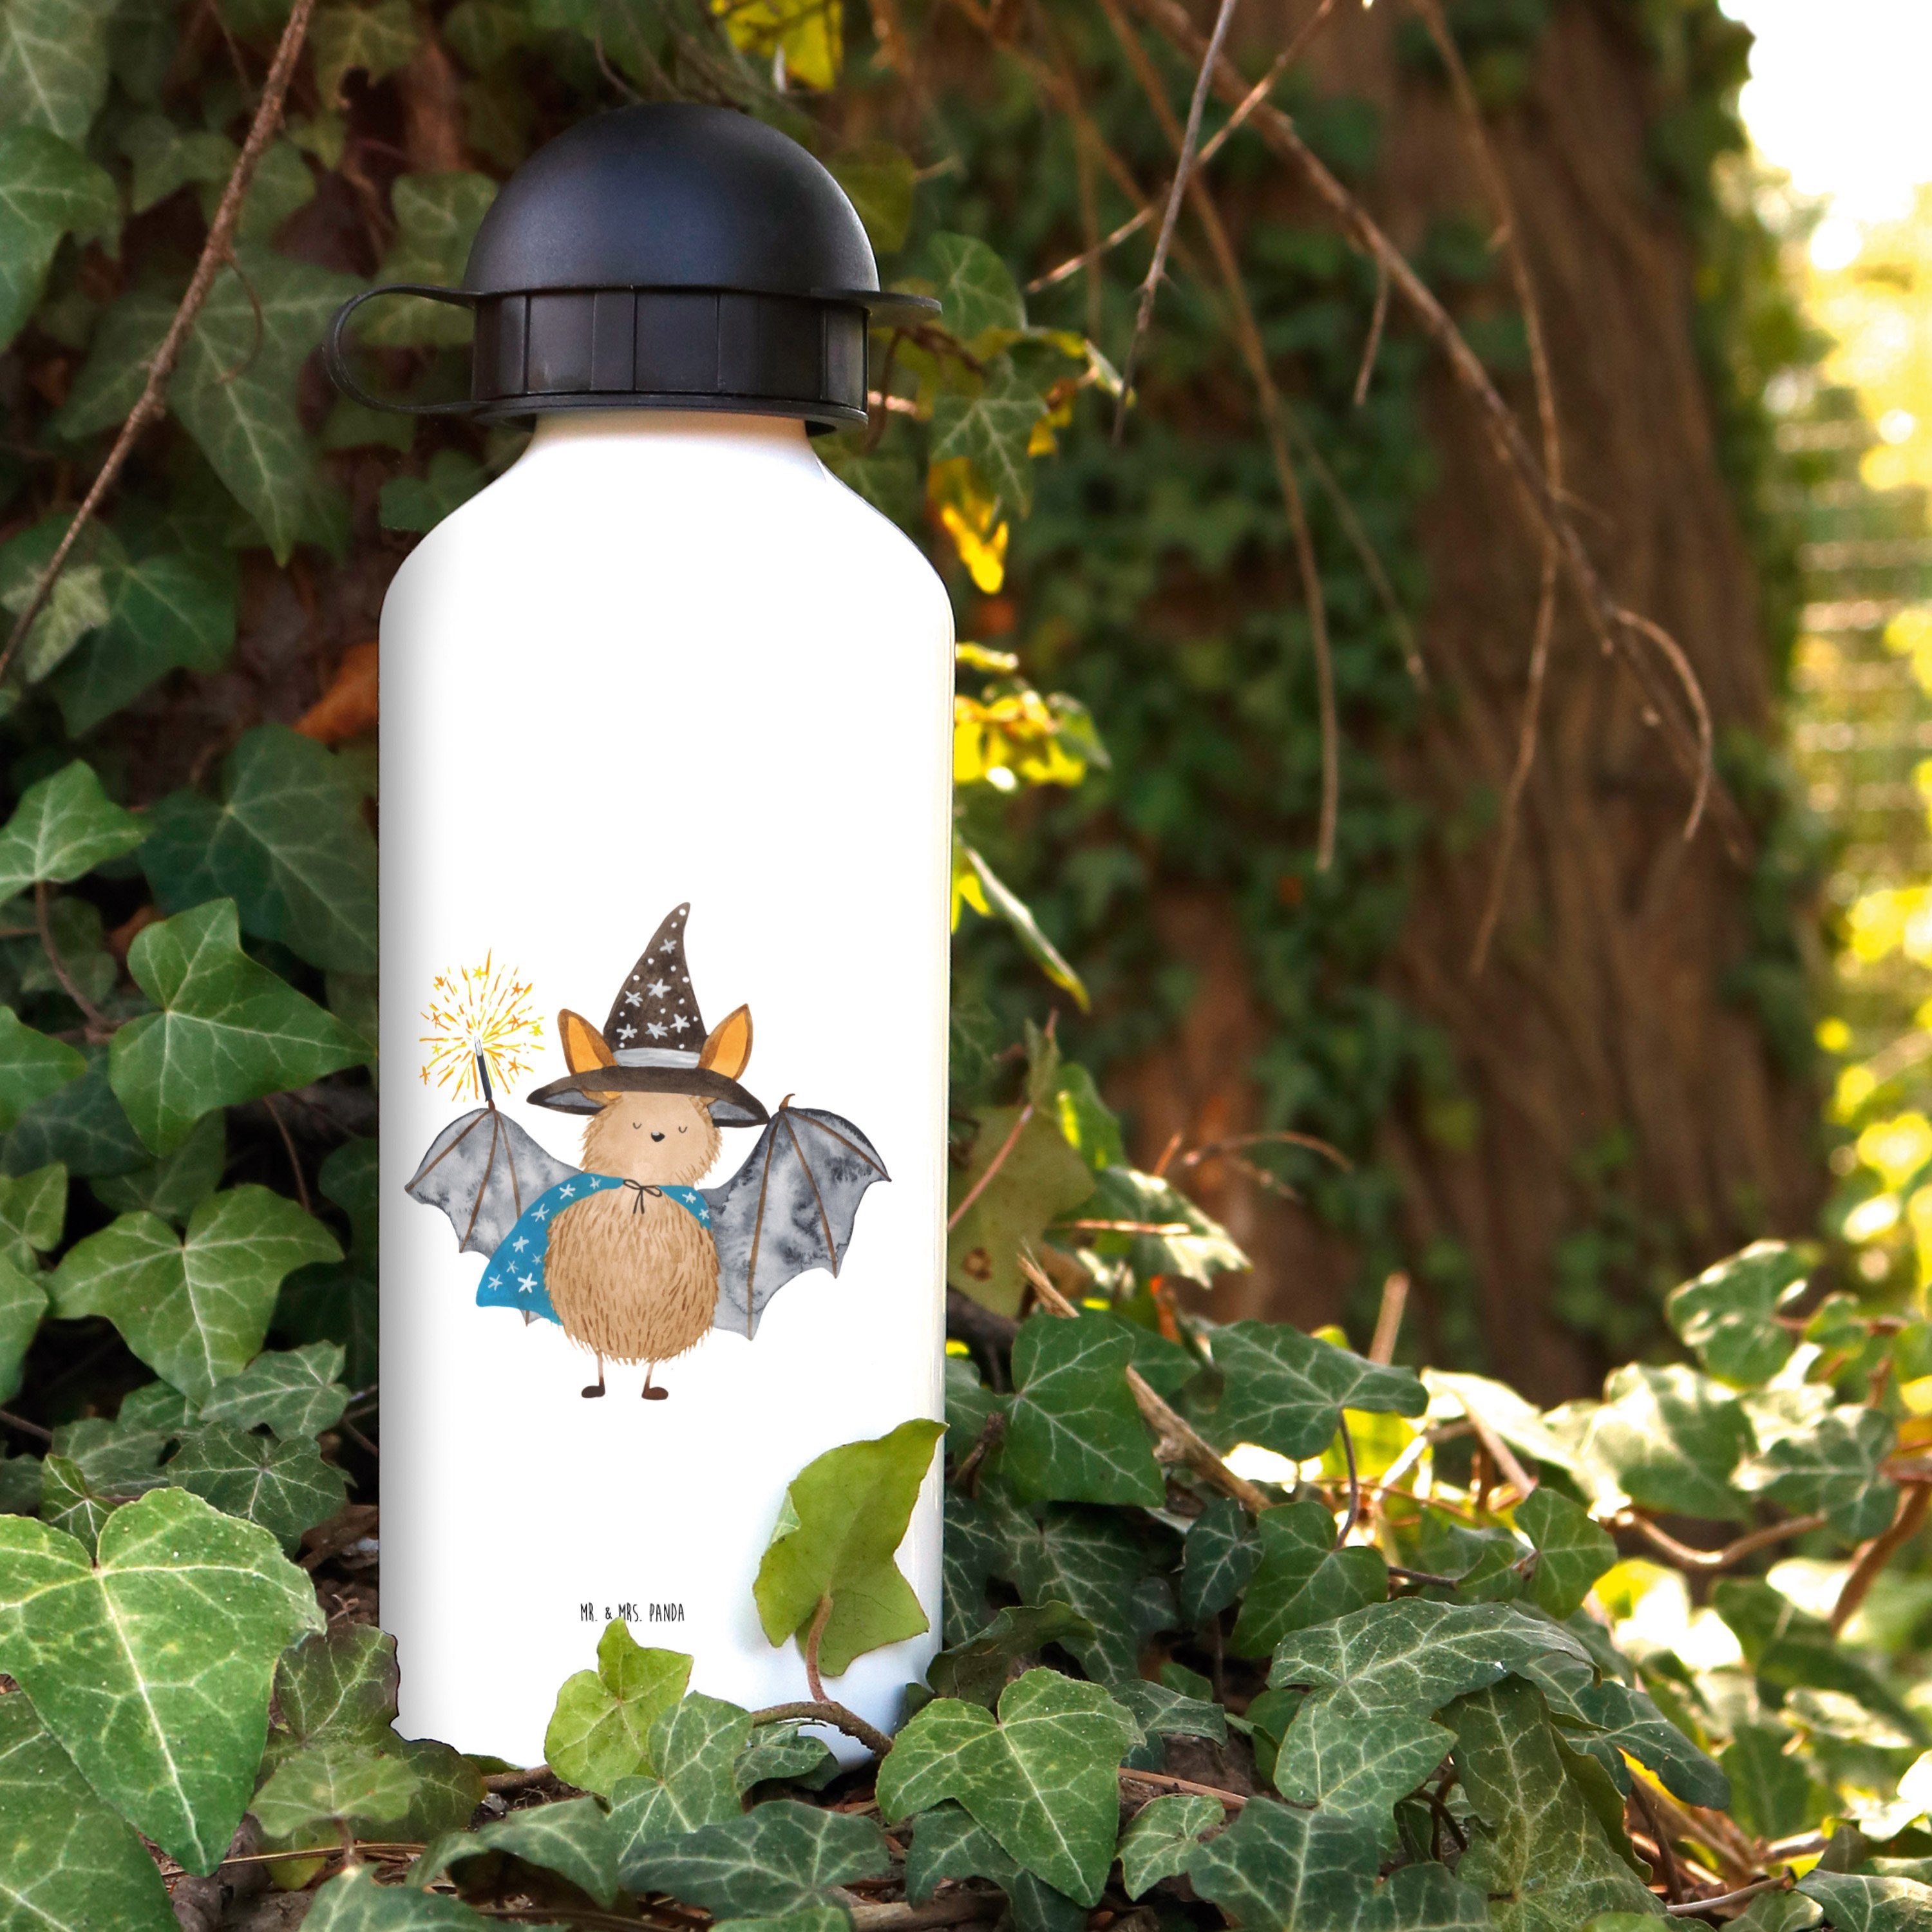 Mr. & Mrs. Panda Trinkflasche lustige Fledermaus - Weiß Sprüche, Geschenk, Zauberer Tiere, Fleder 